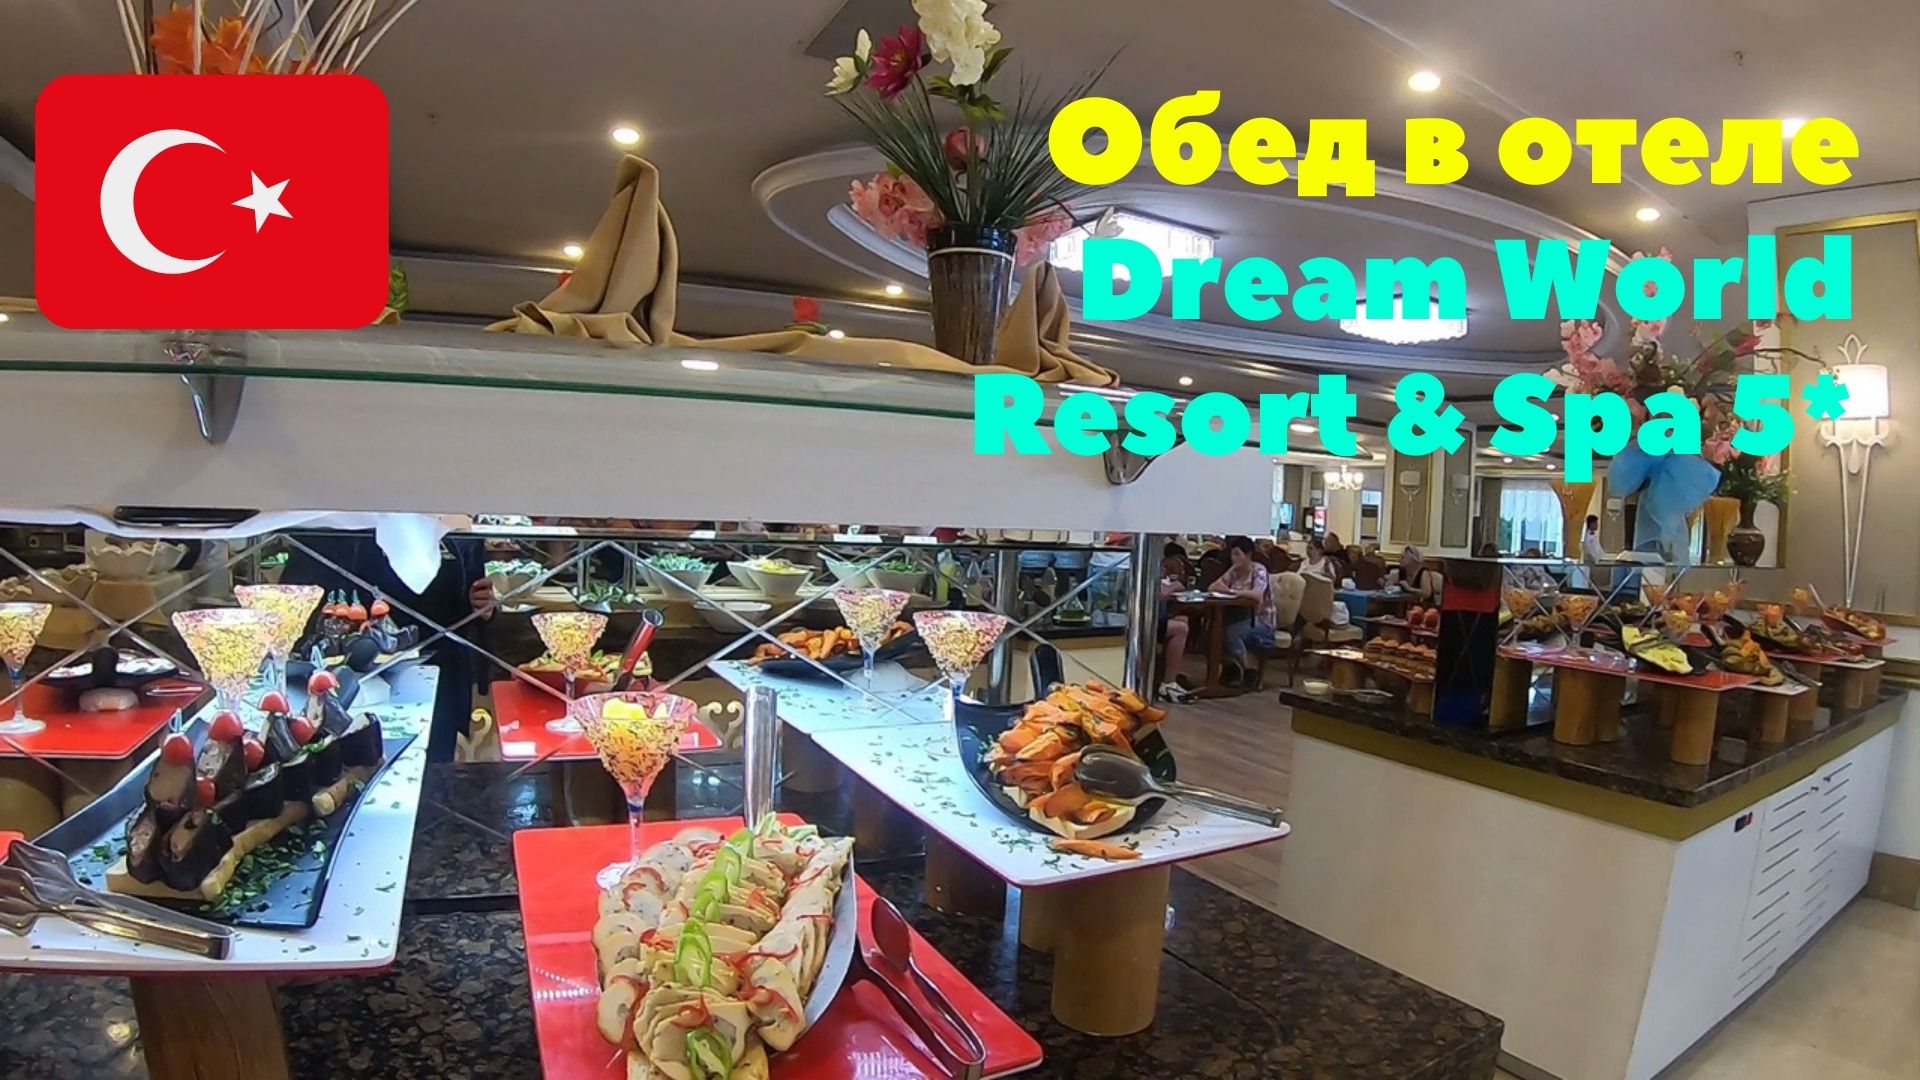 Обед в отеле Dream World Resort & Spa 5*. Сервис в ресторане отеля. Турция 2020